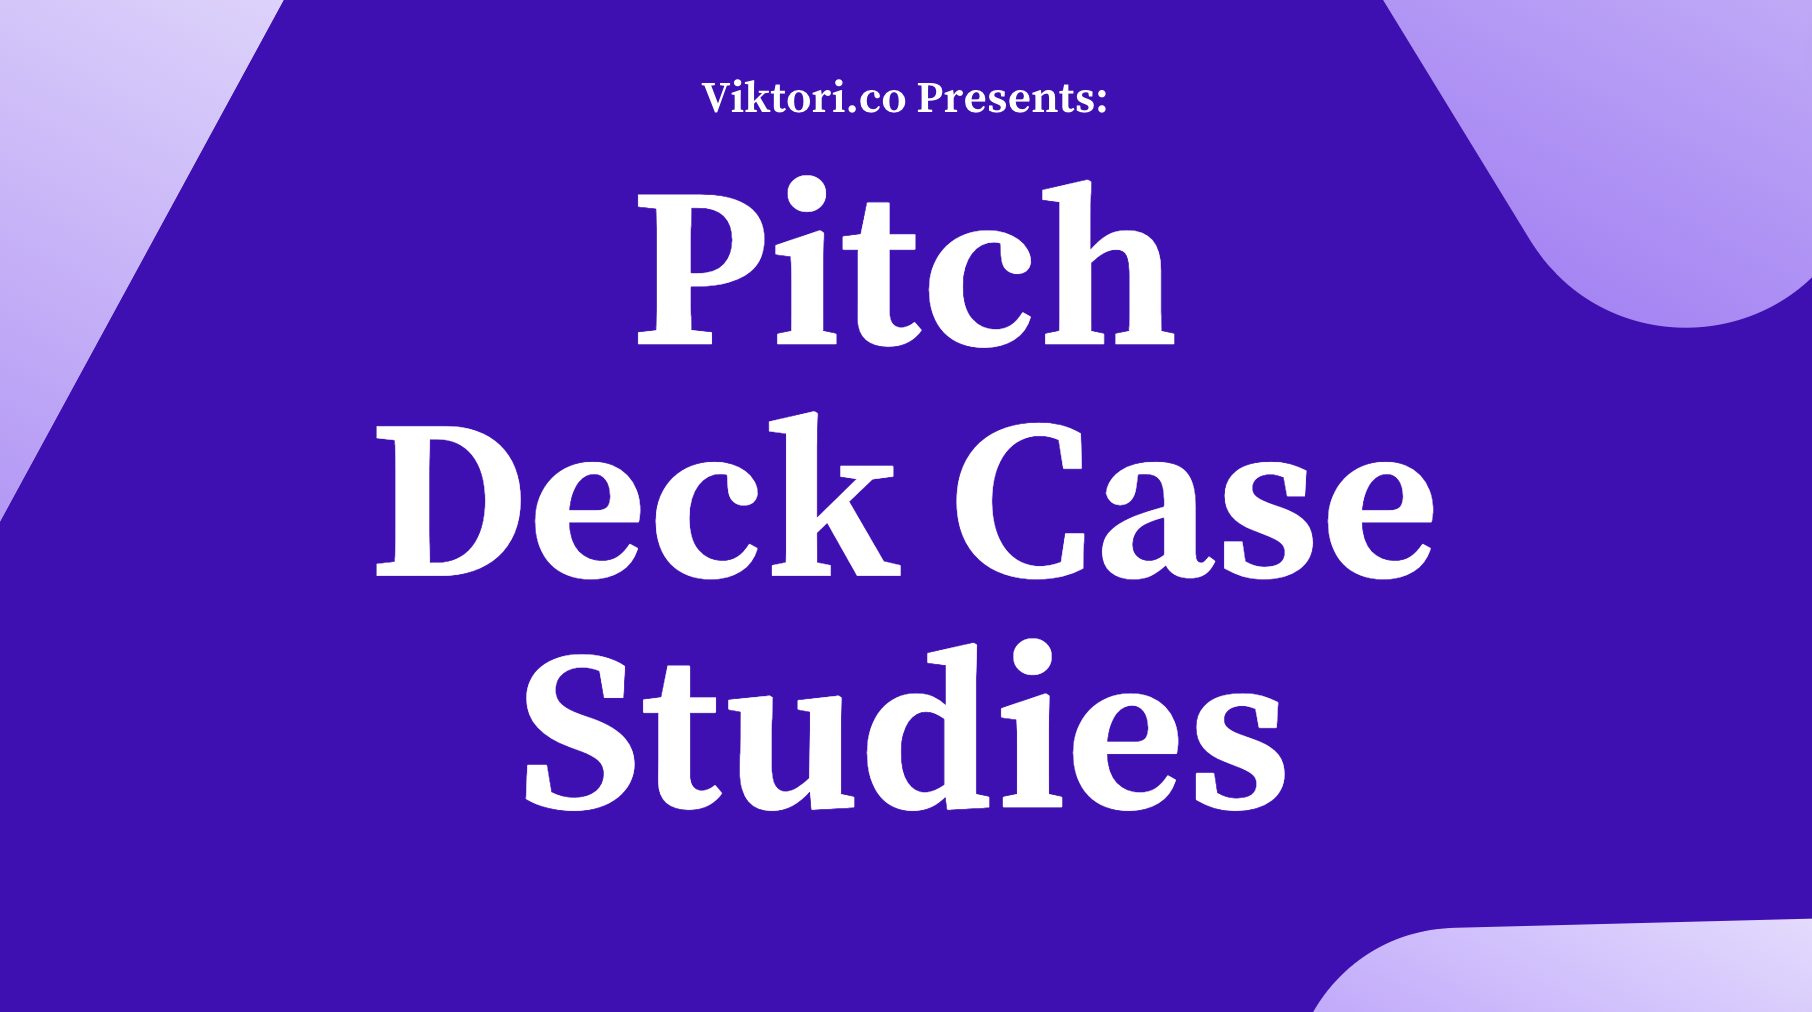 pitch deck case studies